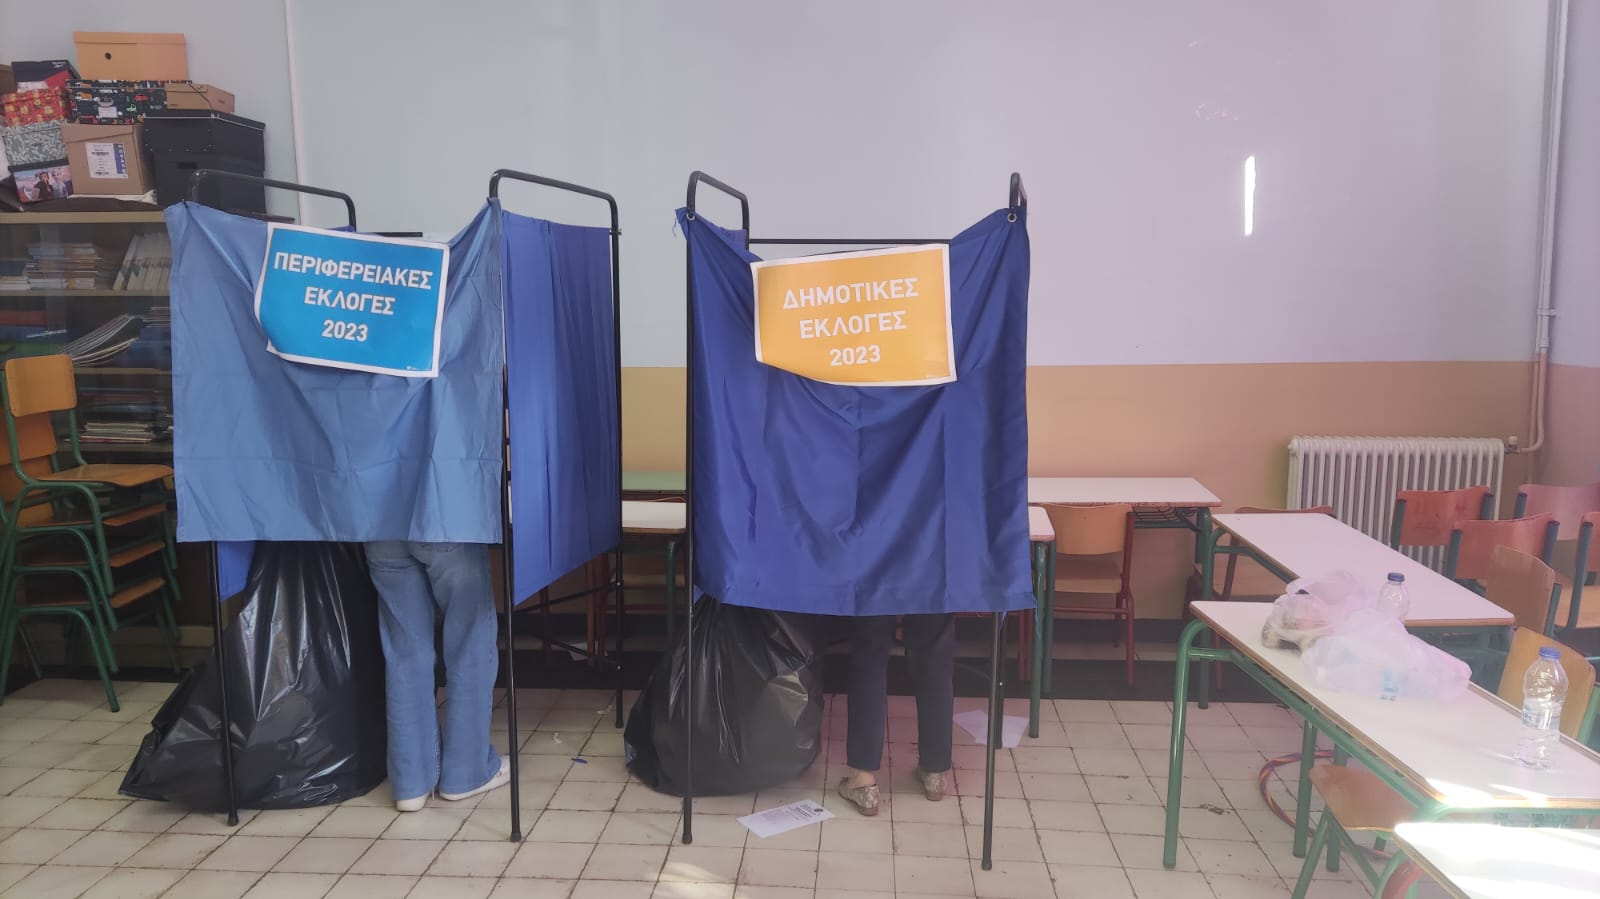 Ναύπλιο: Άλλαξαν τον στυλό από μπλε σε κόκκινο ώστε να βγουν τα ψηφοδέλτια άκυρα